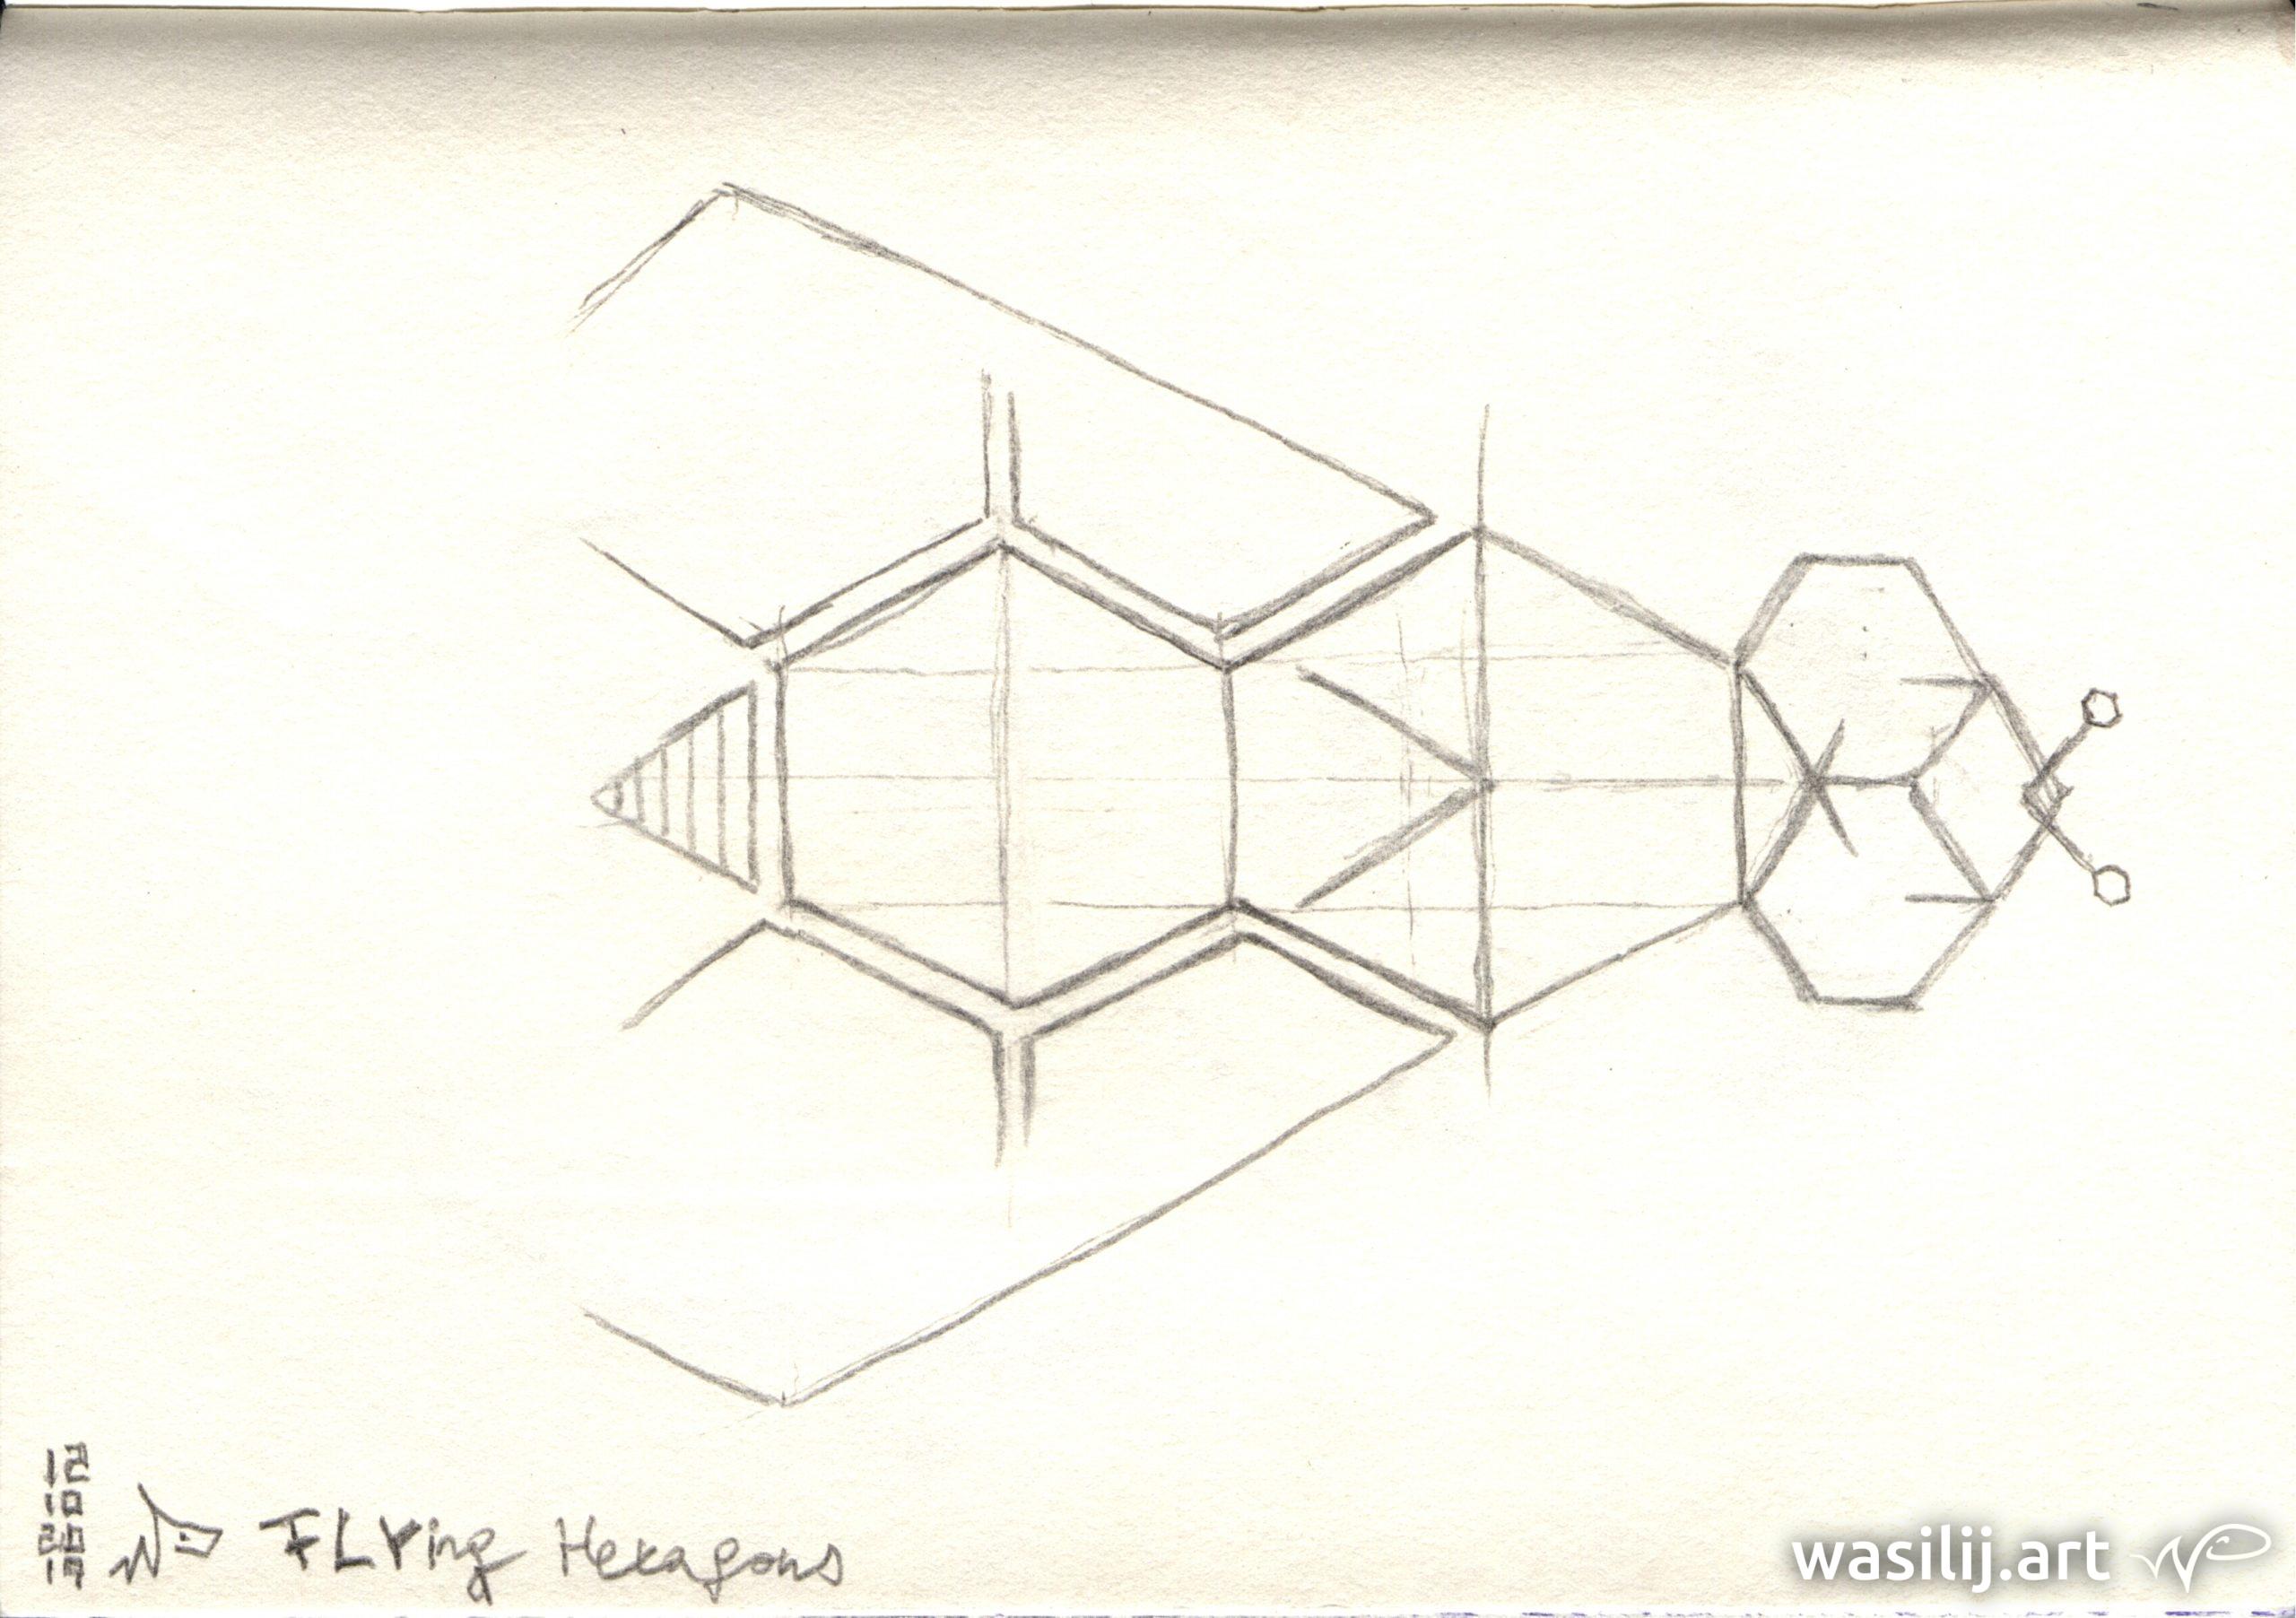 wasilij.art - FLYing Hexagons - Zeichnung